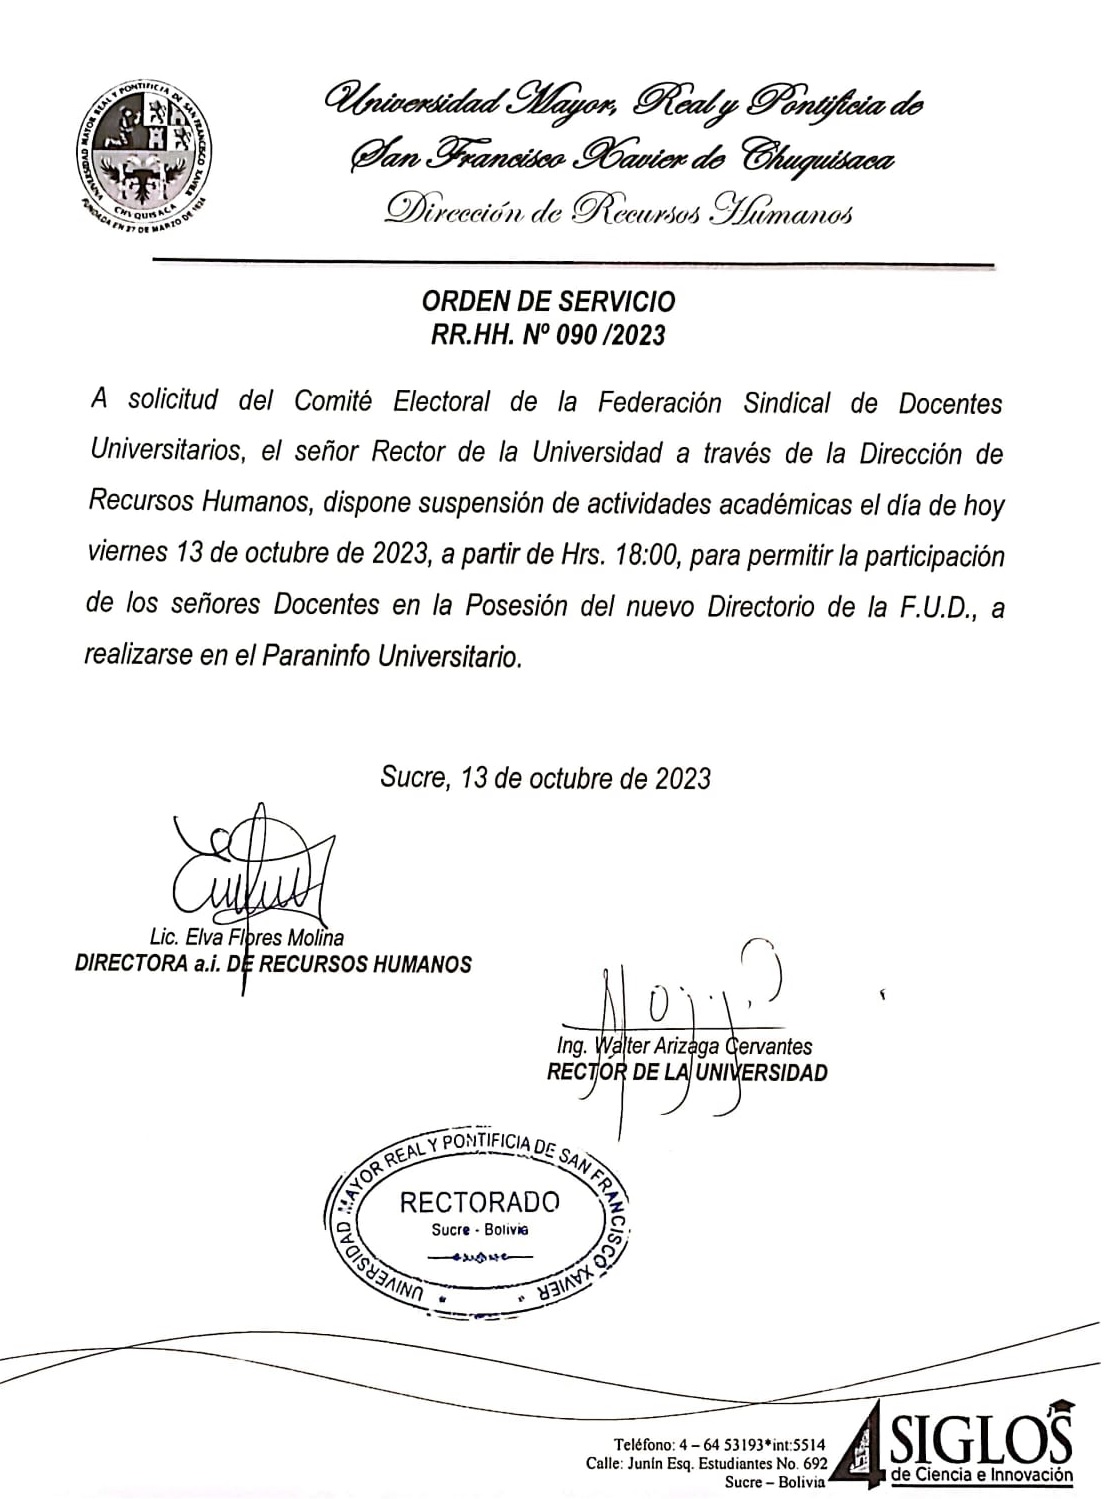 ORDEN DE SERVICIO RR.HH. Nº 090/2023, SUSPENSIÓN DE ACTIVIDADES ACADÉMICAS POSESIÓN FUD.